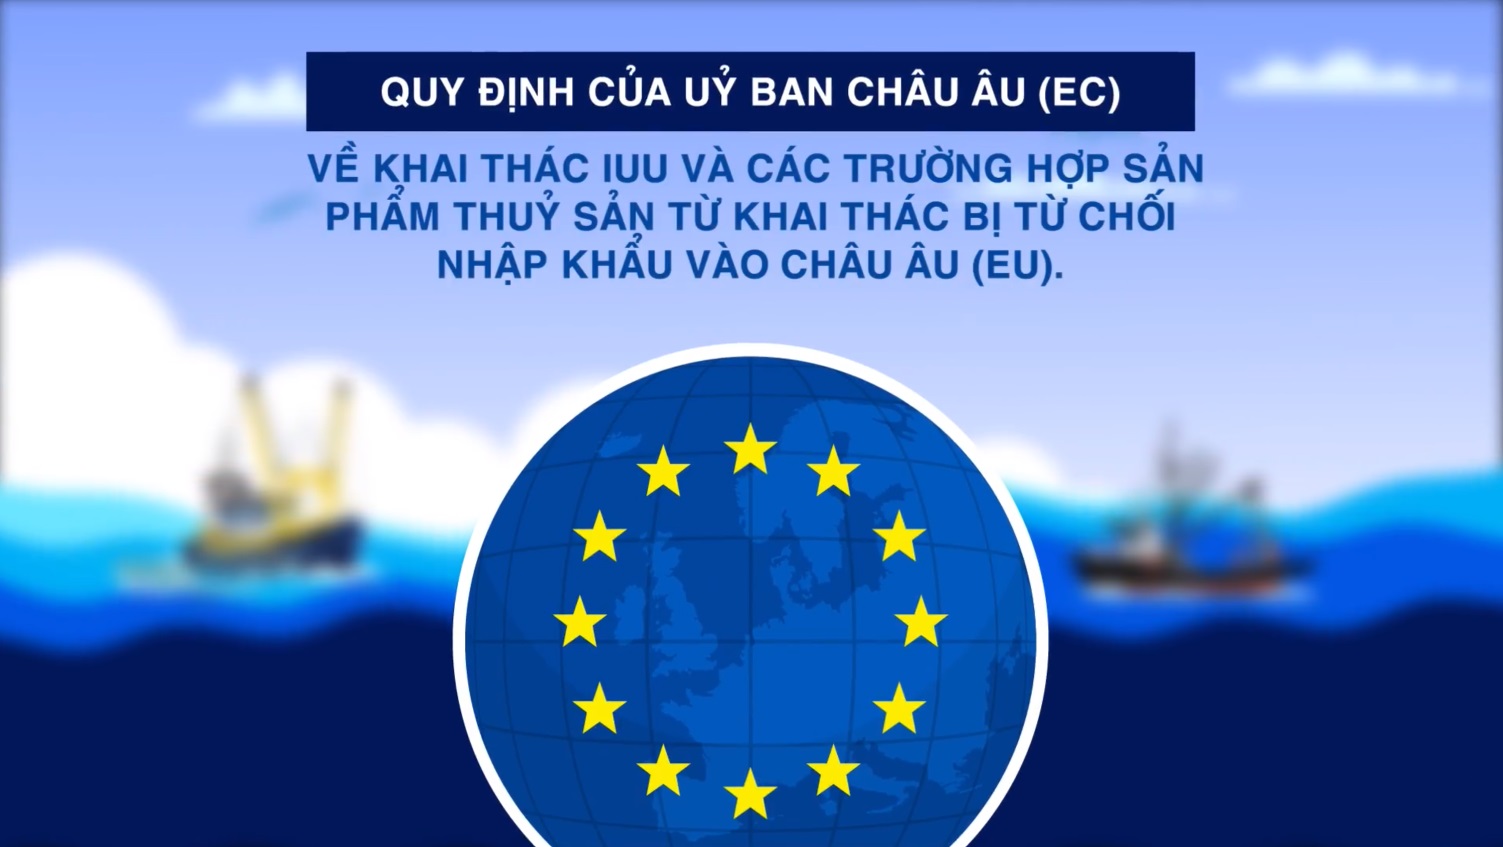 Quy định của Ủy ban Châu âu (EC) về khai thác IUU